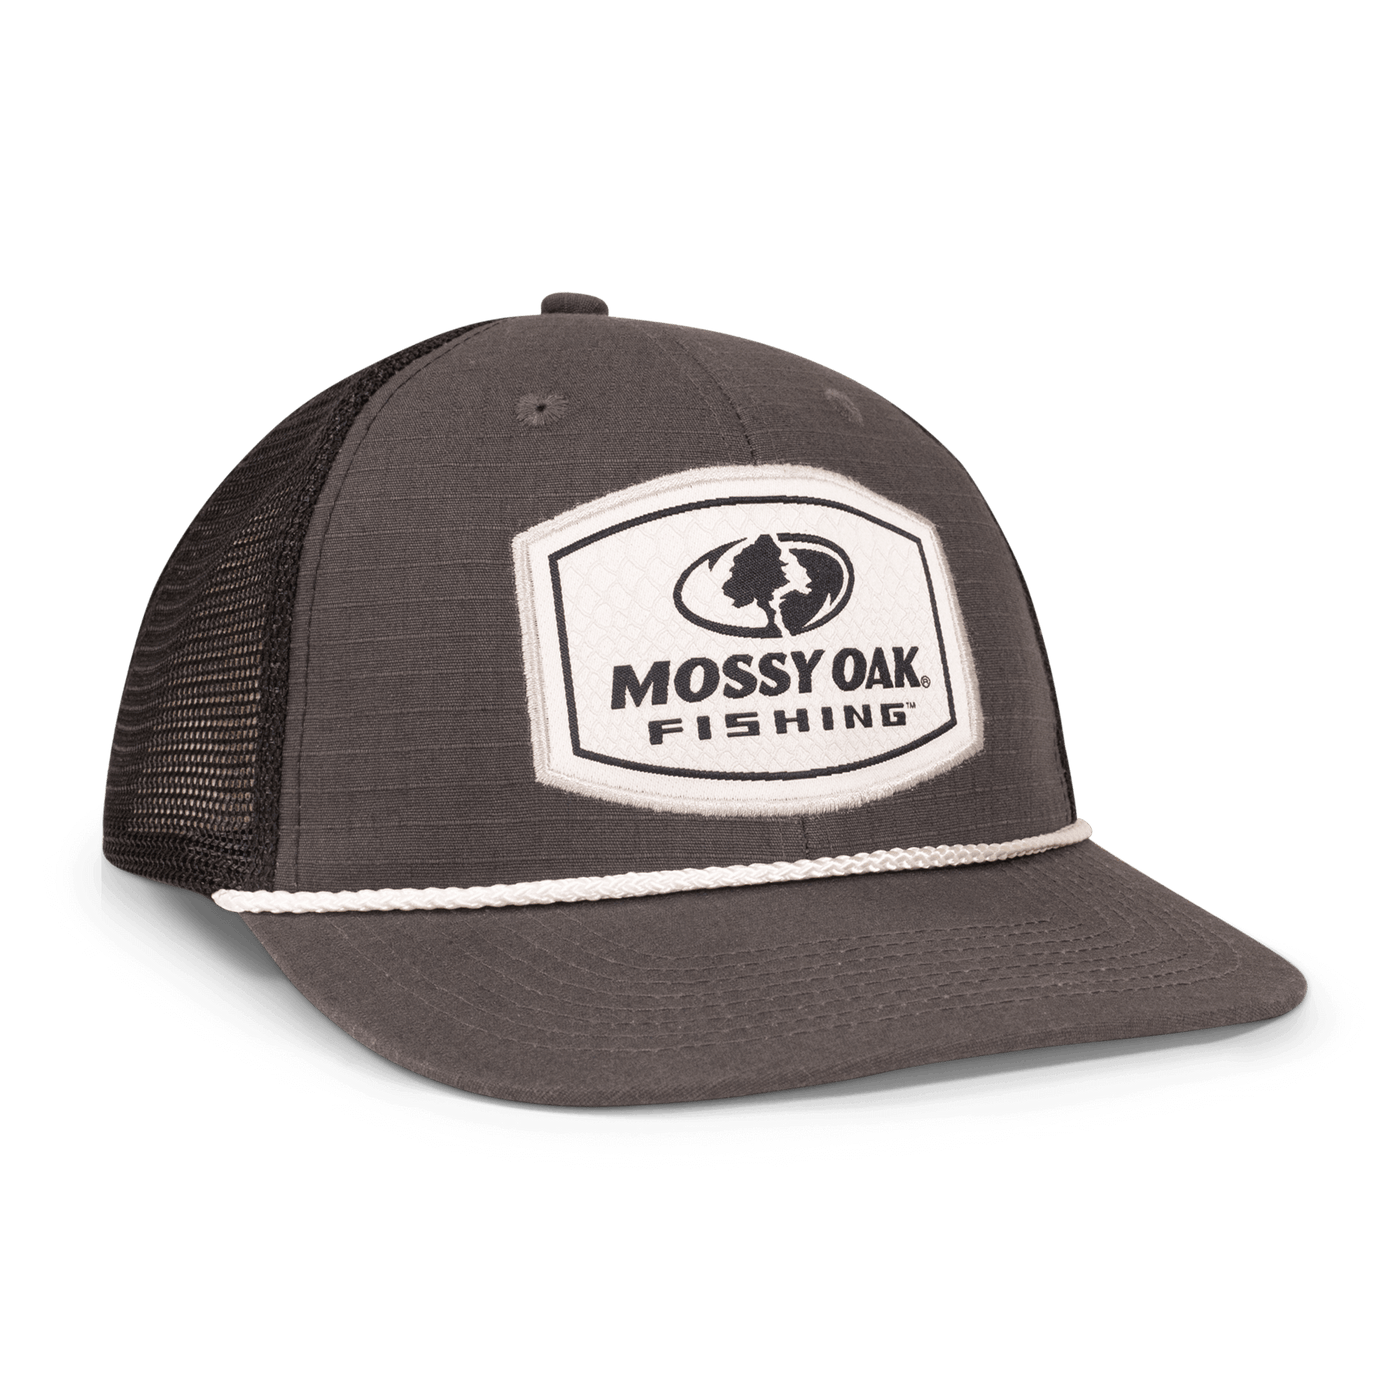 Mossy Oak Fishing Rope Hat